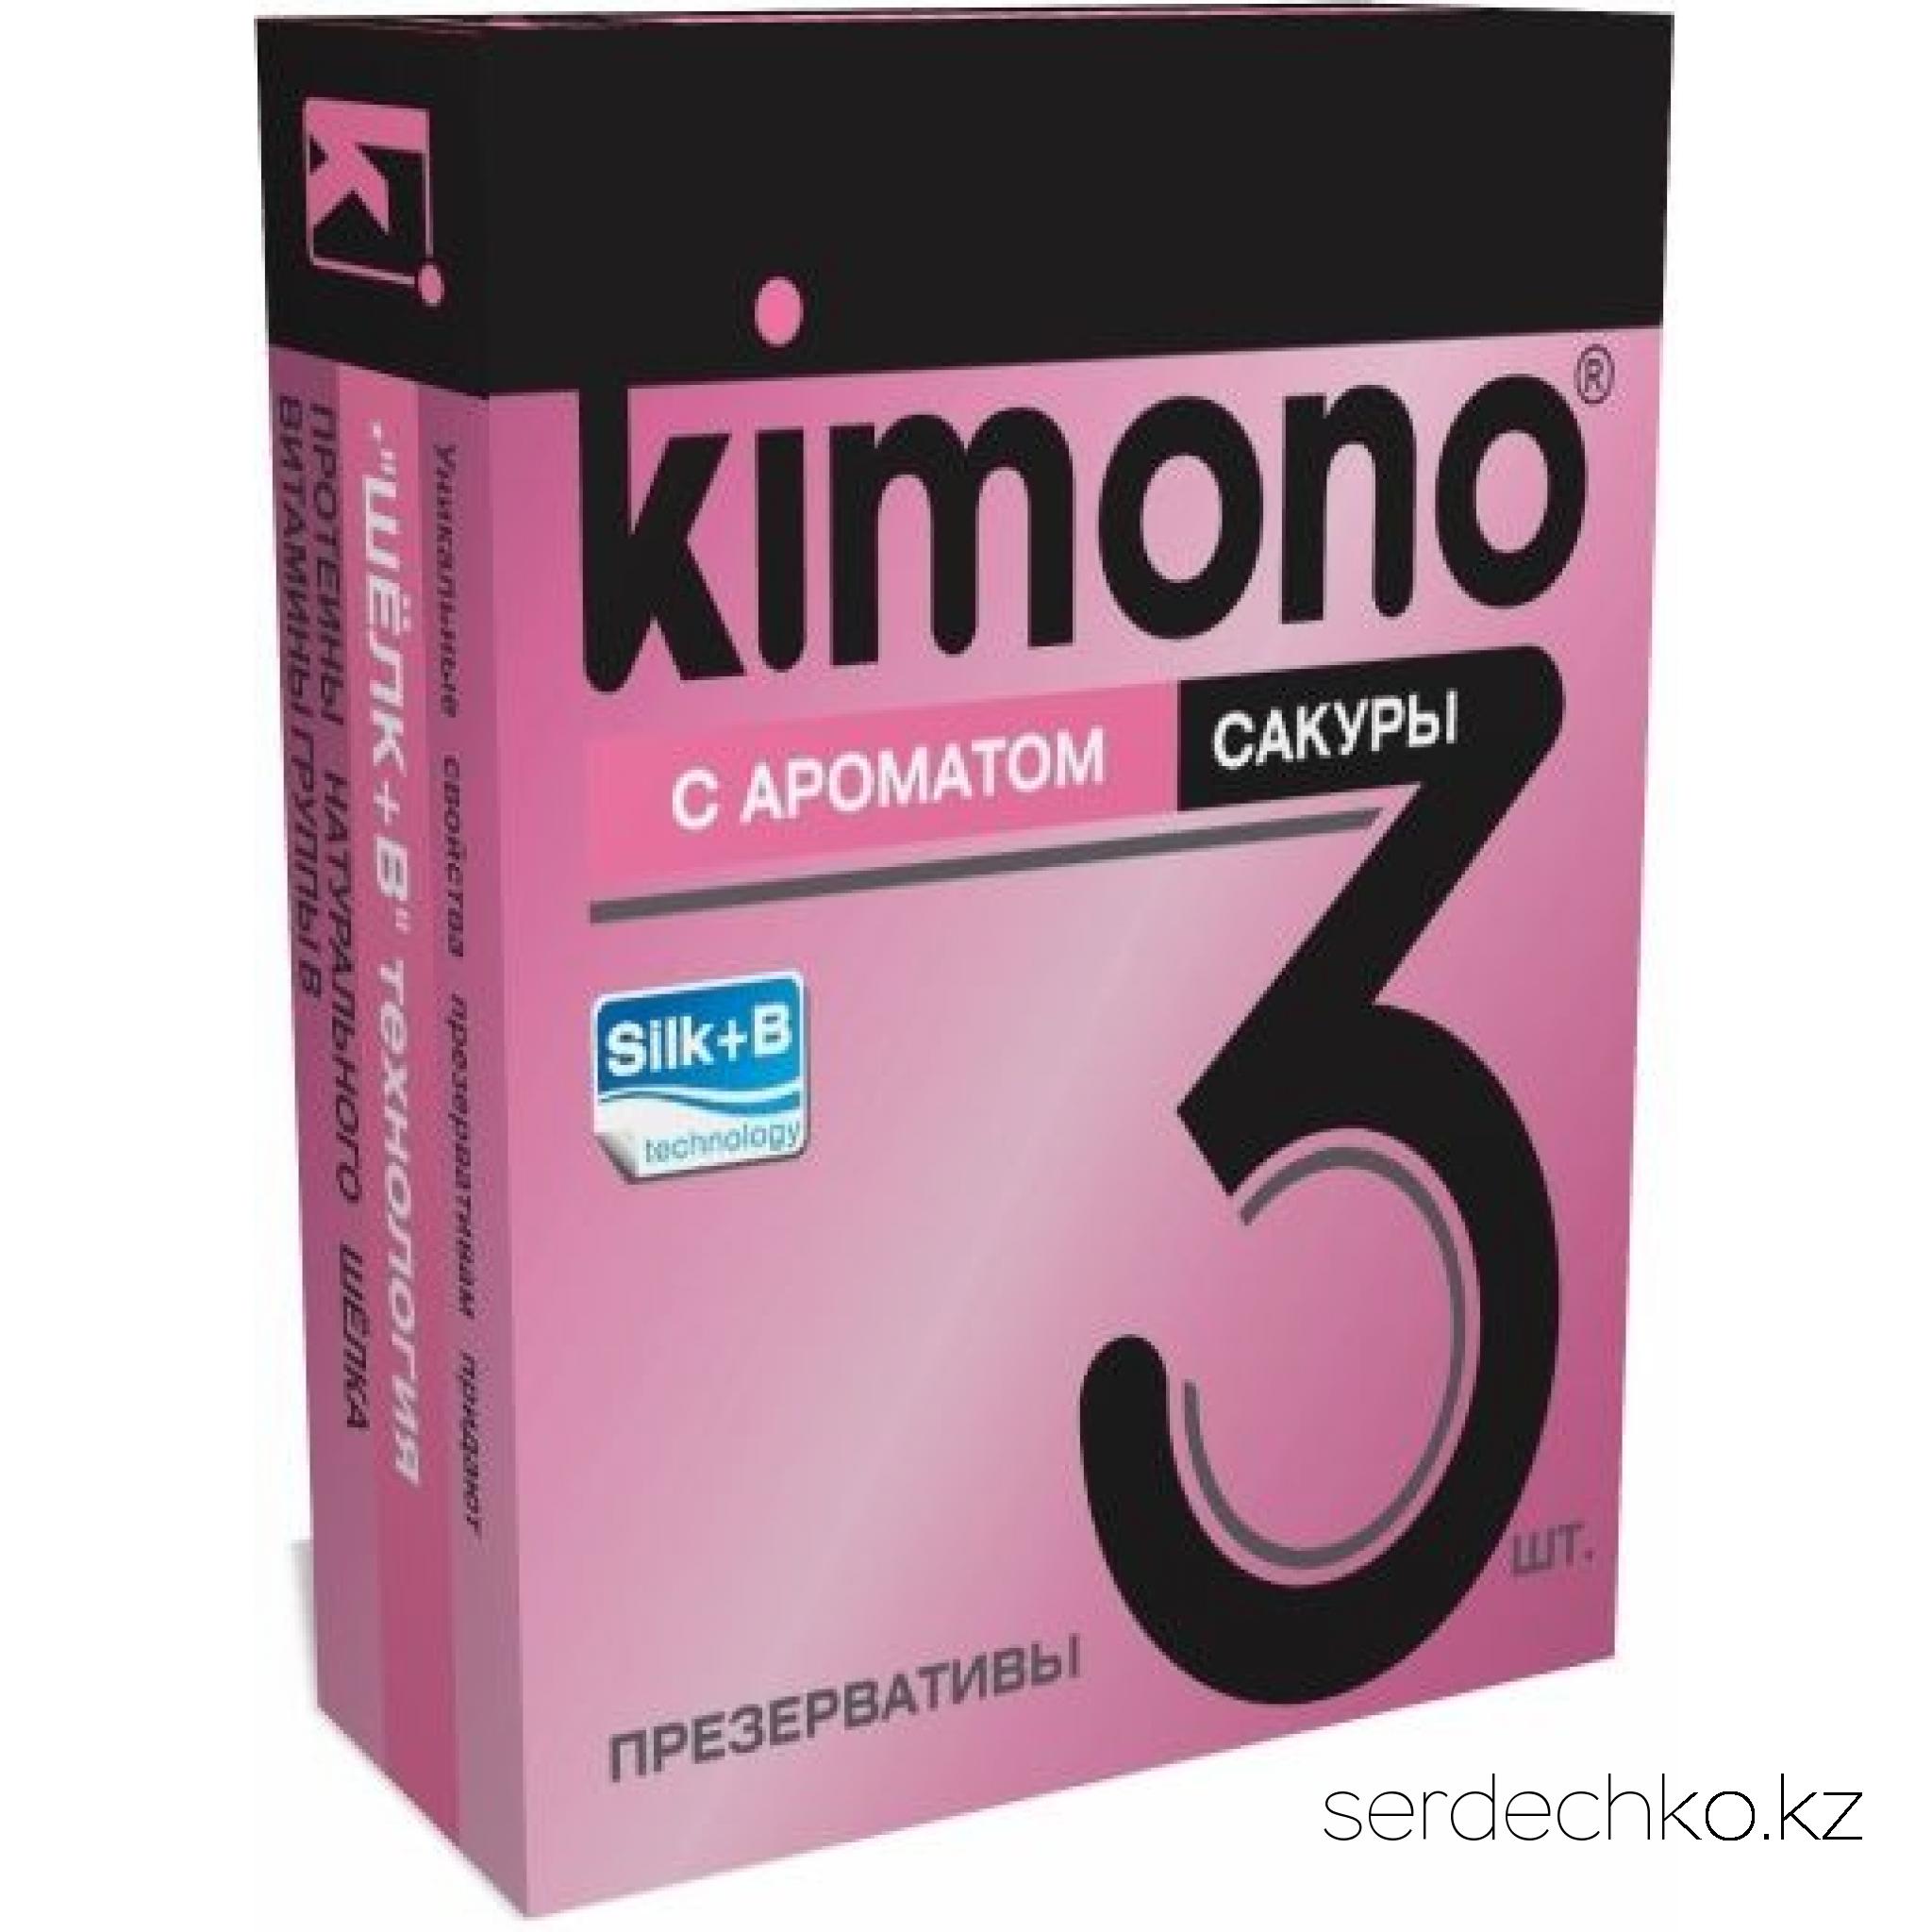 ПРЕЗЕРВАТИВЫ KIMONO (с ароматом сакуры) 3 шт, 
	Презерватив – защитное средство от множества патогенных микробов и наиболее эффективный контрацептив, который должен быть всегда под рукой! Ведь никогда не знаешь, где он может пригодиться – на свидании, в ночном клубе, в гостях…
	Представляем вашему вниманию презервативы KIMONO с ароматом сакуры, которые подарят приятные ощущения во время интимной близости. Они легко надеваются на половой орган мужчины или фаллоимитатор.
	Для комфортного использования совместно с презервативом рекомендуется применять любриканты на водной основе. Например, смазки из серий "О'Кей" или «Услада».
